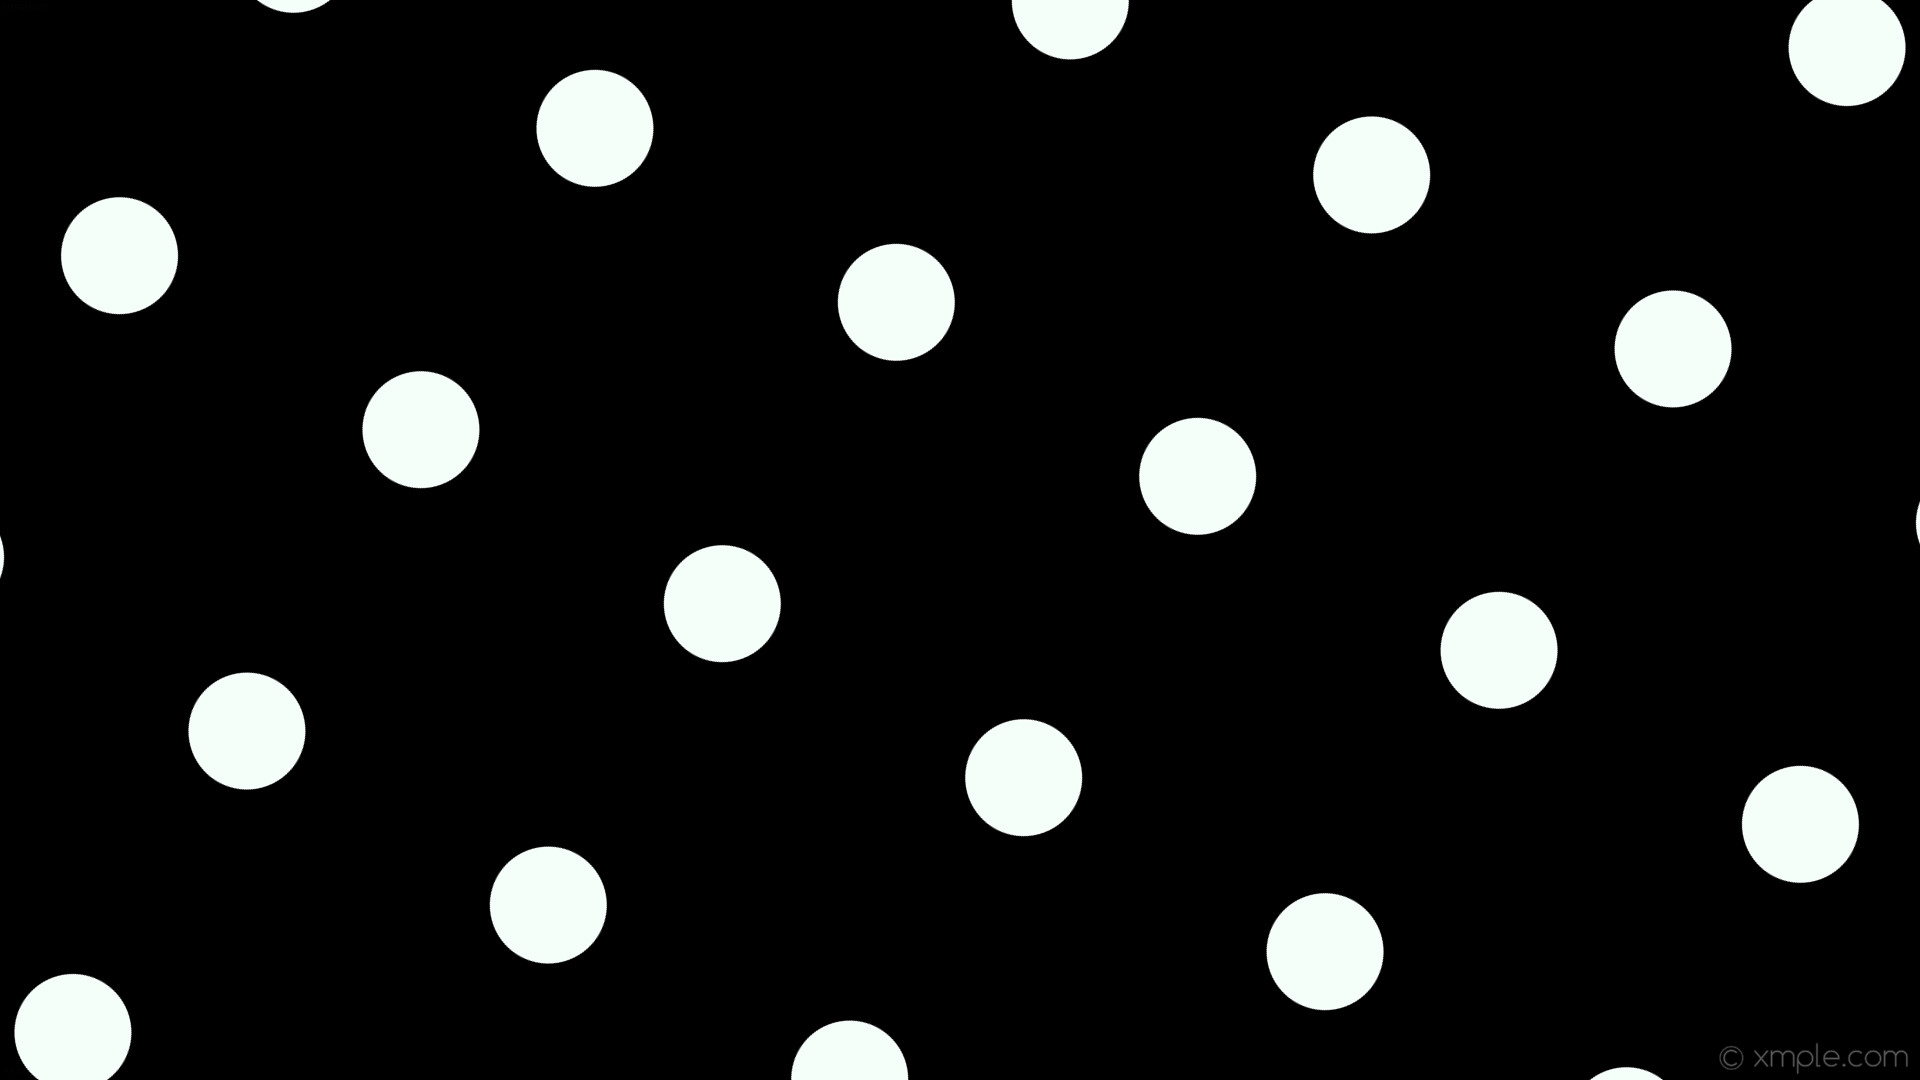 1920x1080 wallpaper spots white dots polka black mint cream #000000 #f5fffa 60Â° 117px  348px